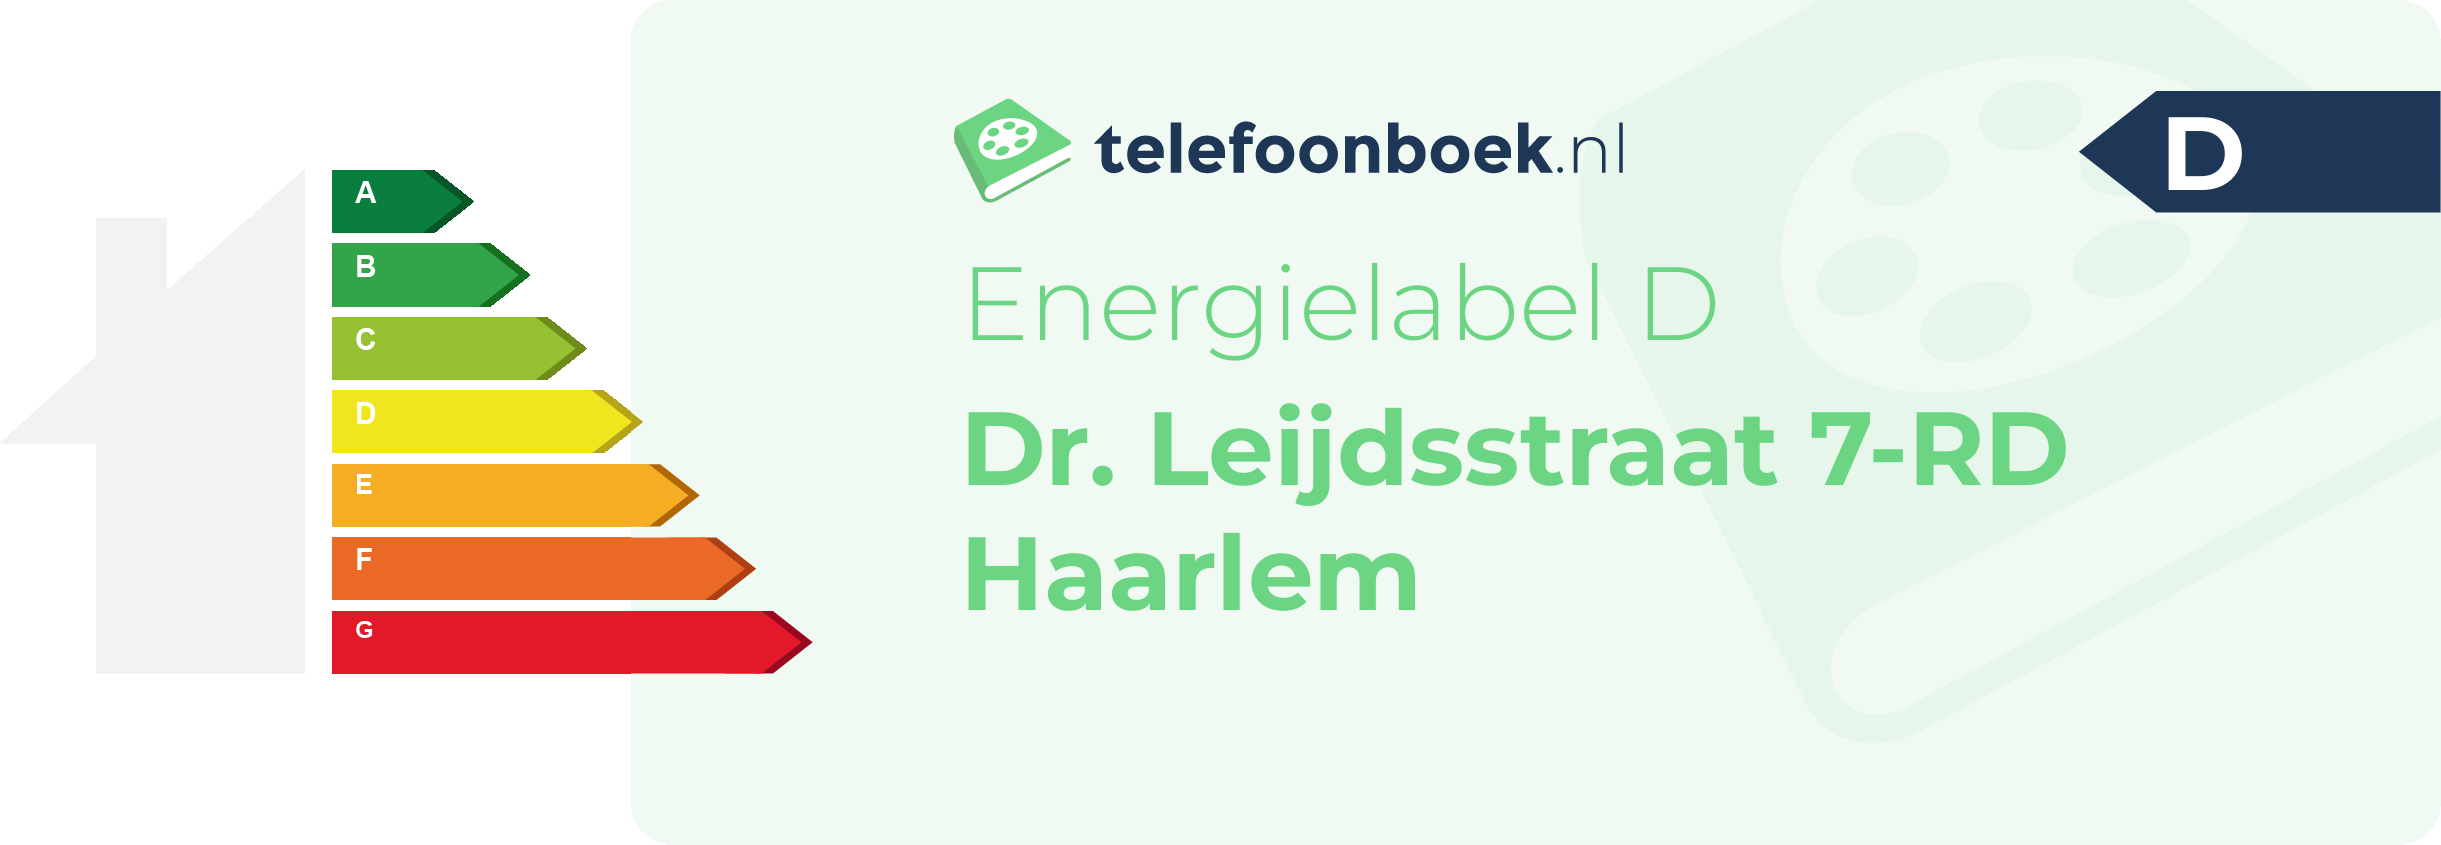 Energielabel Dr. Leijdsstraat 7-RD Haarlem